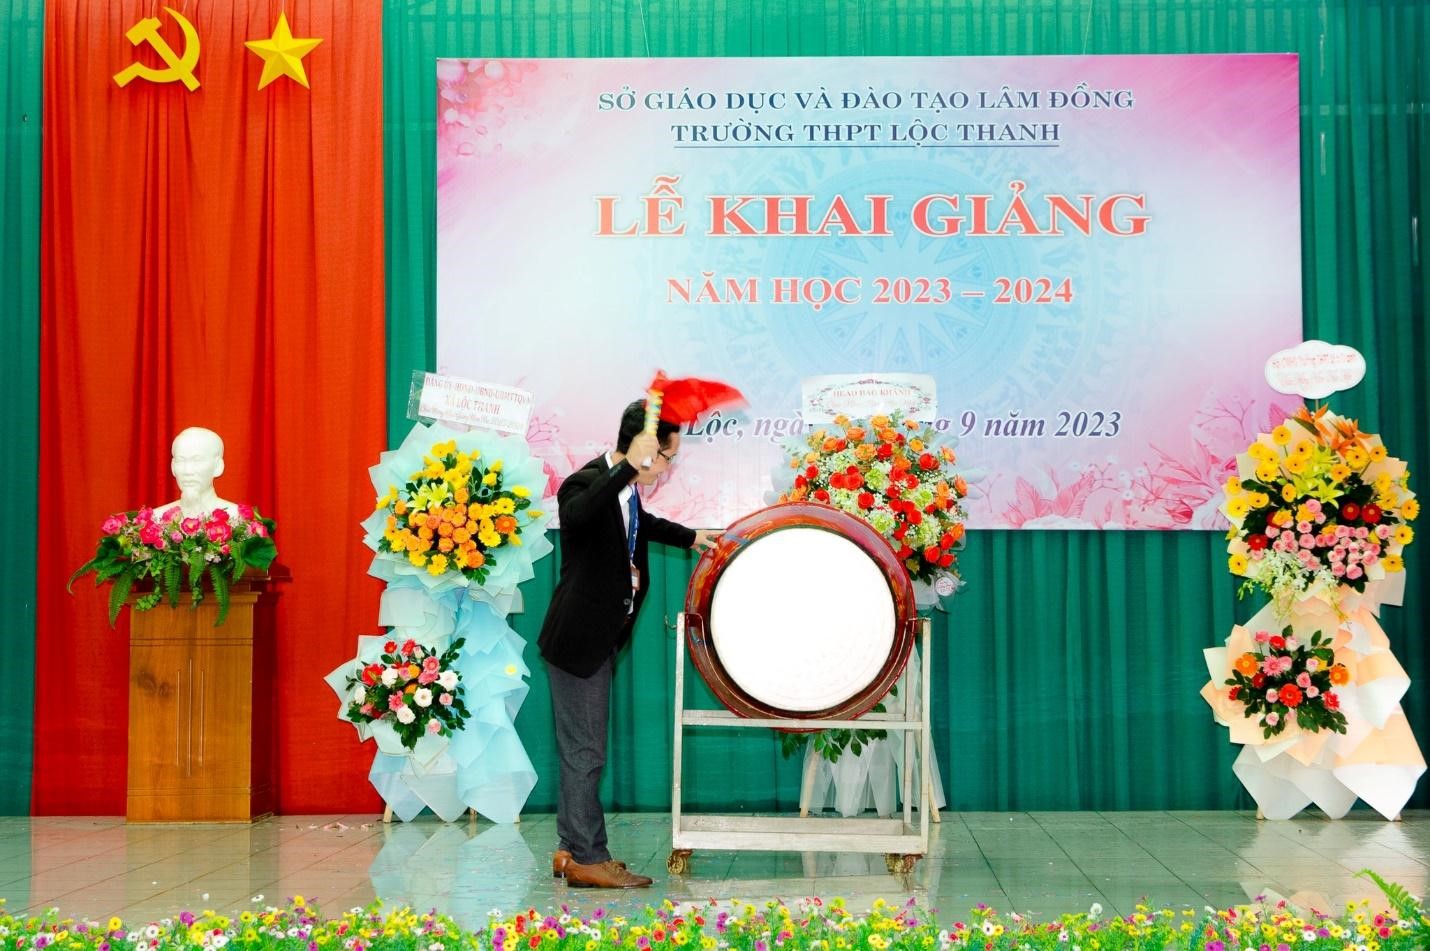 Trường THPT Lộc Thanh long trọng tổ chức Lễ khai giảng năm học 2023-2024